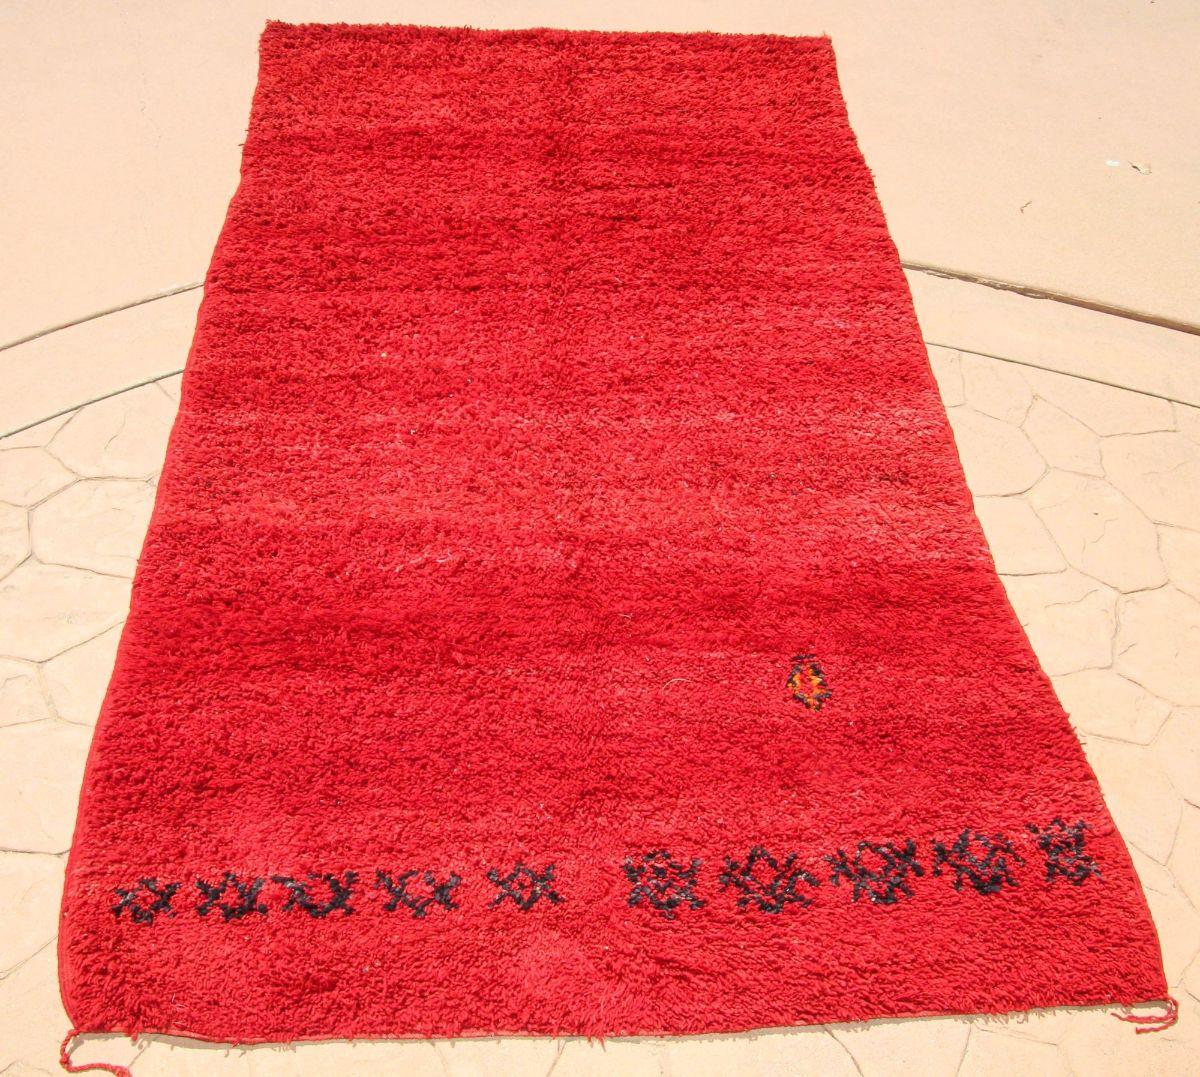 1960s Vintage Red Ethnic Moroccan Fluffy Rug.Vintage authentique tribal Moroccan Berber rug from the Middle Atlas mountains. Tapis africain ethnique monochrome rouge avec des variations d'intensité de couleur typiques de cette tribu. Il s'agit d'un